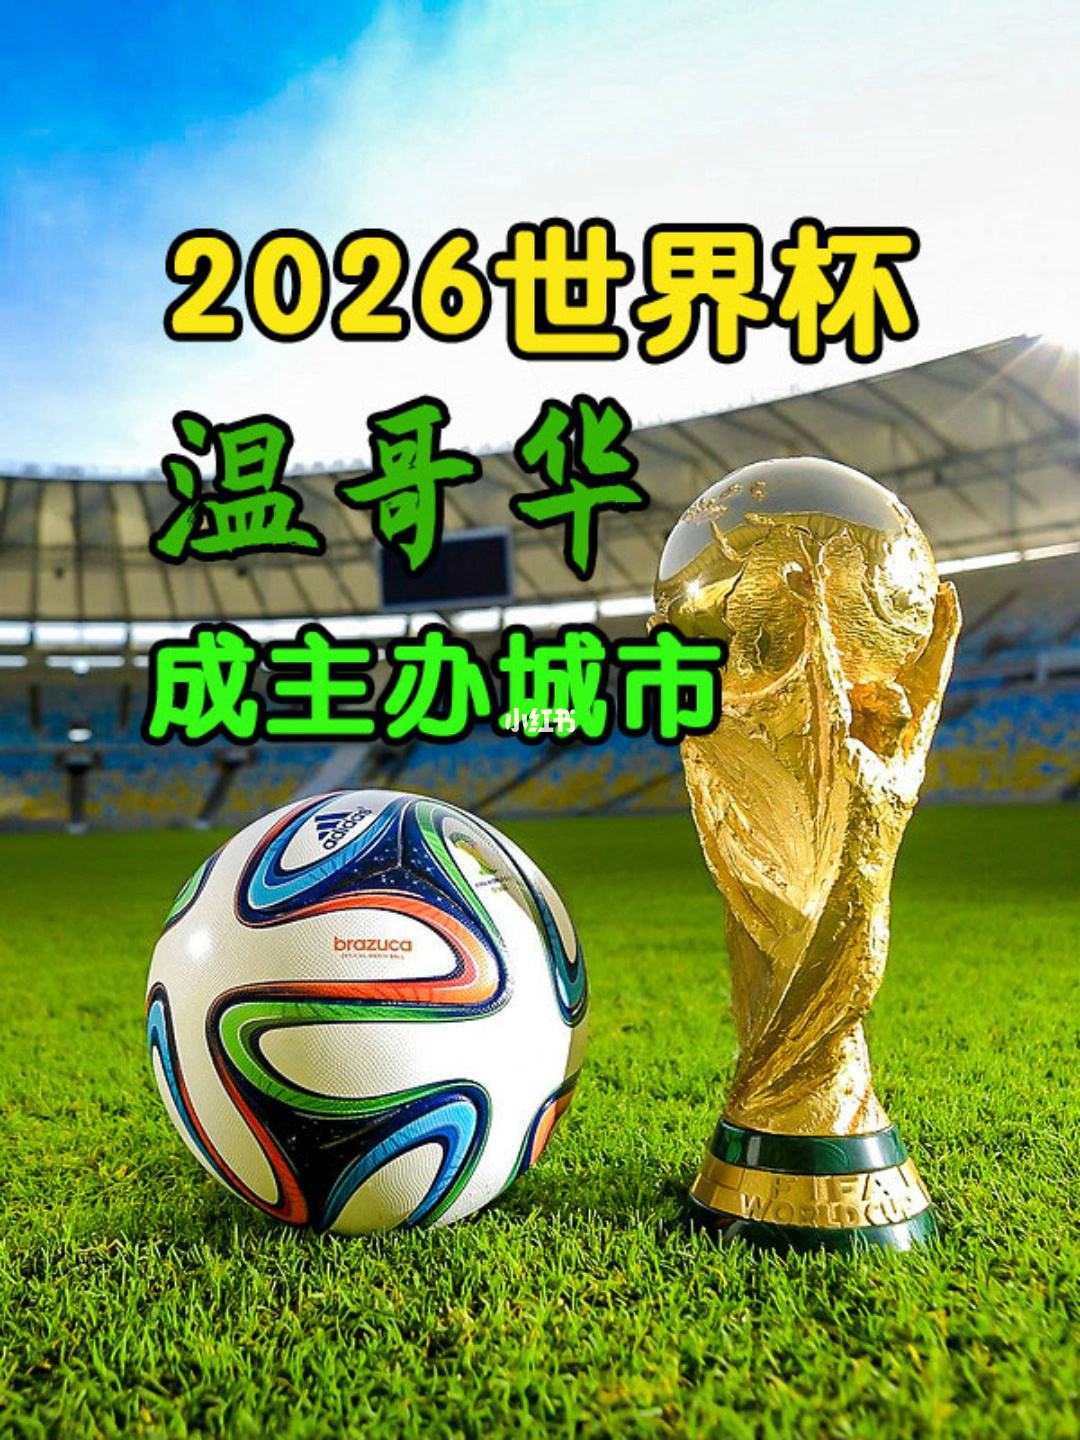 2026年世界杯（2026年世界杯分配名额）